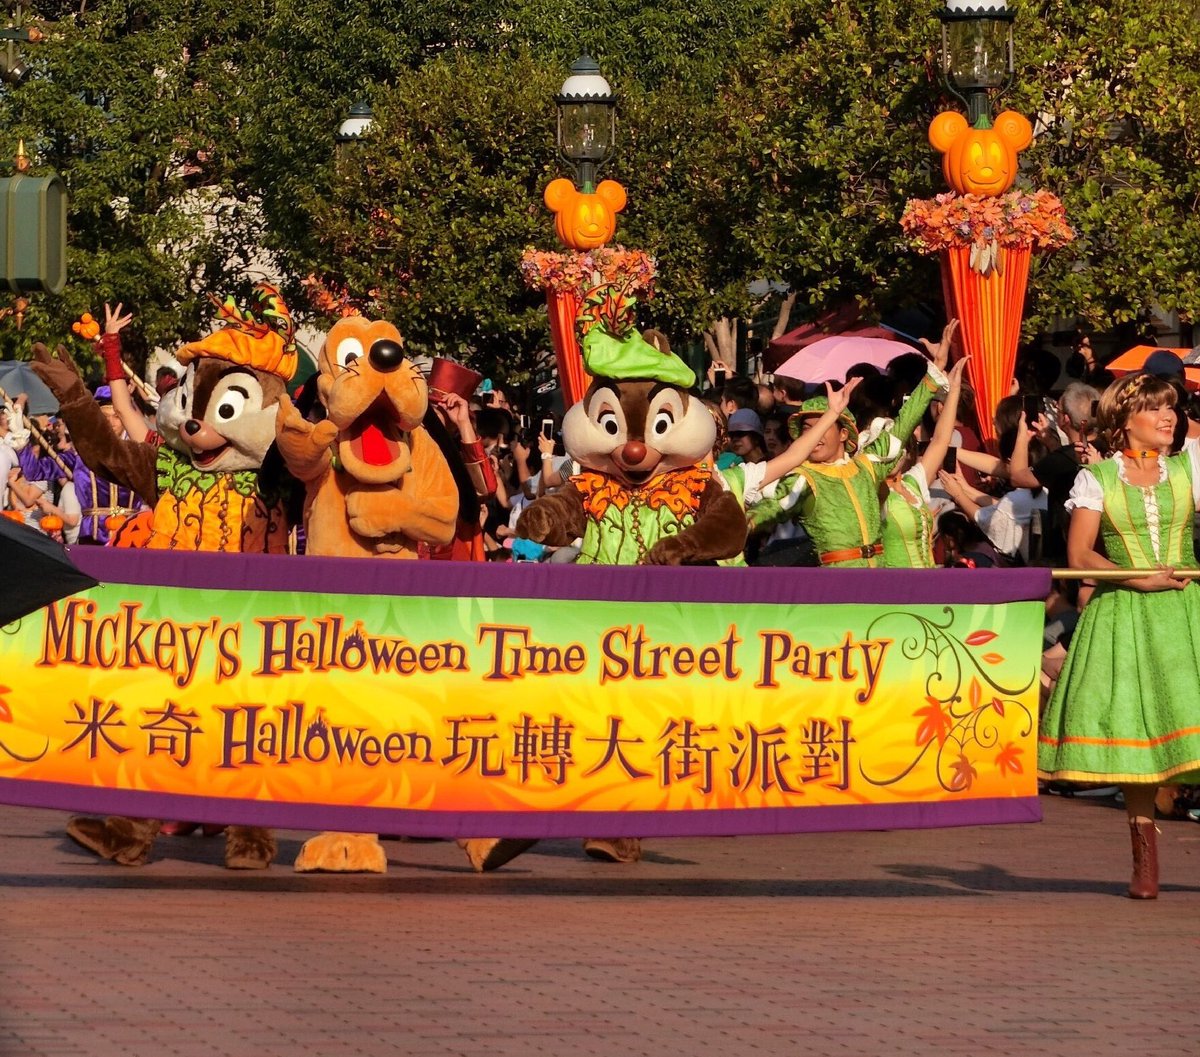 Zero على تويتر 香港ディズニーハロウィンのお昼のパレード フロートはミッキー ミニー グーフィーの3台だけで短いパレードだけど 停止してからのダンスタイム曲がtdlで昔やってたスクリーム シャウトの曲だったからめっちゃ懐かしかった